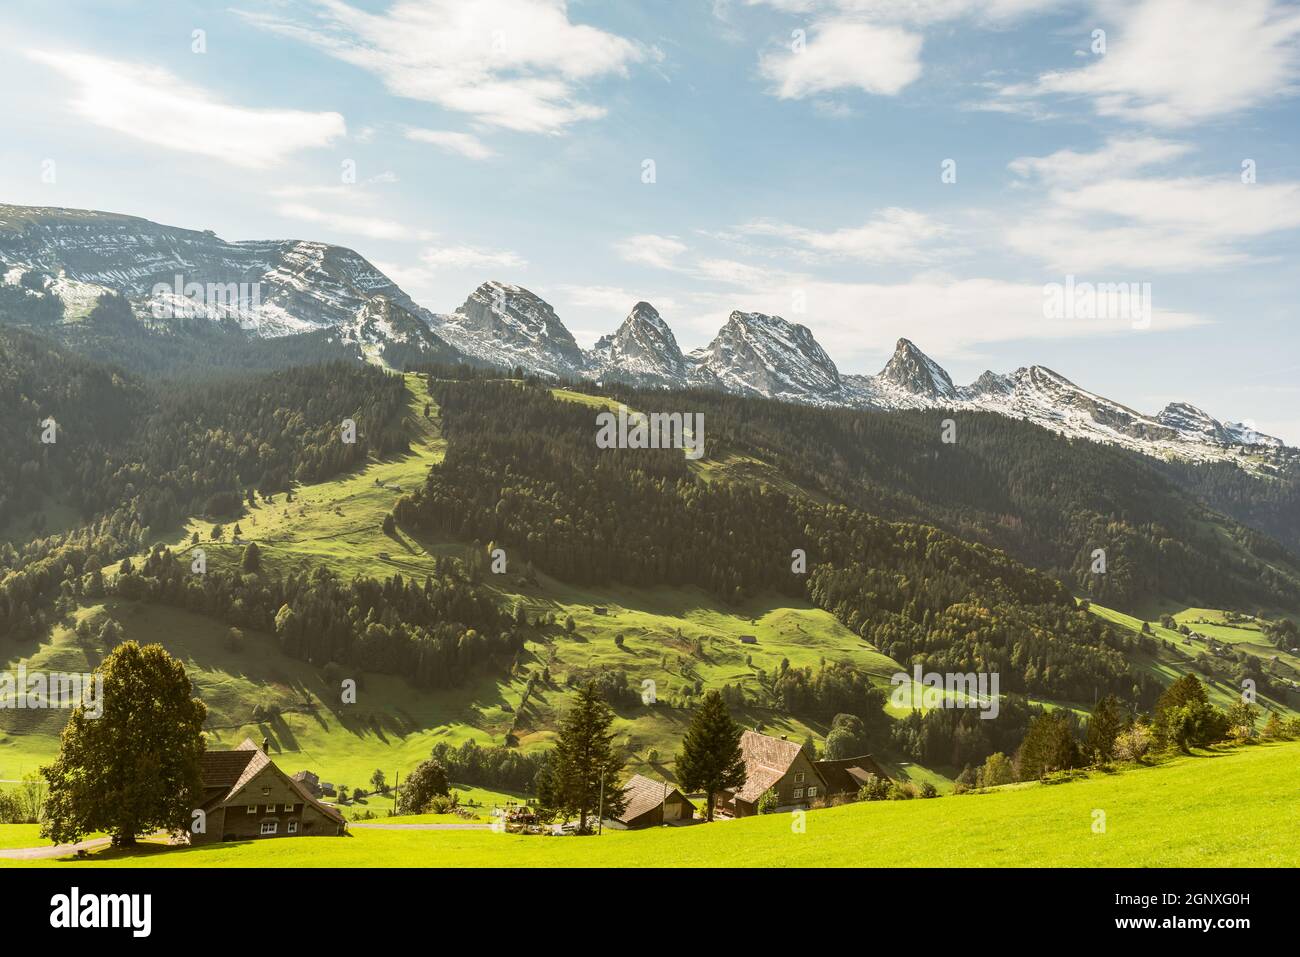 The Churfirsten mountain range, seen from Unterwasser, Wildhaus-Alt St. Johann, Canton of St. Gallen, Switzerland. Stock Photo